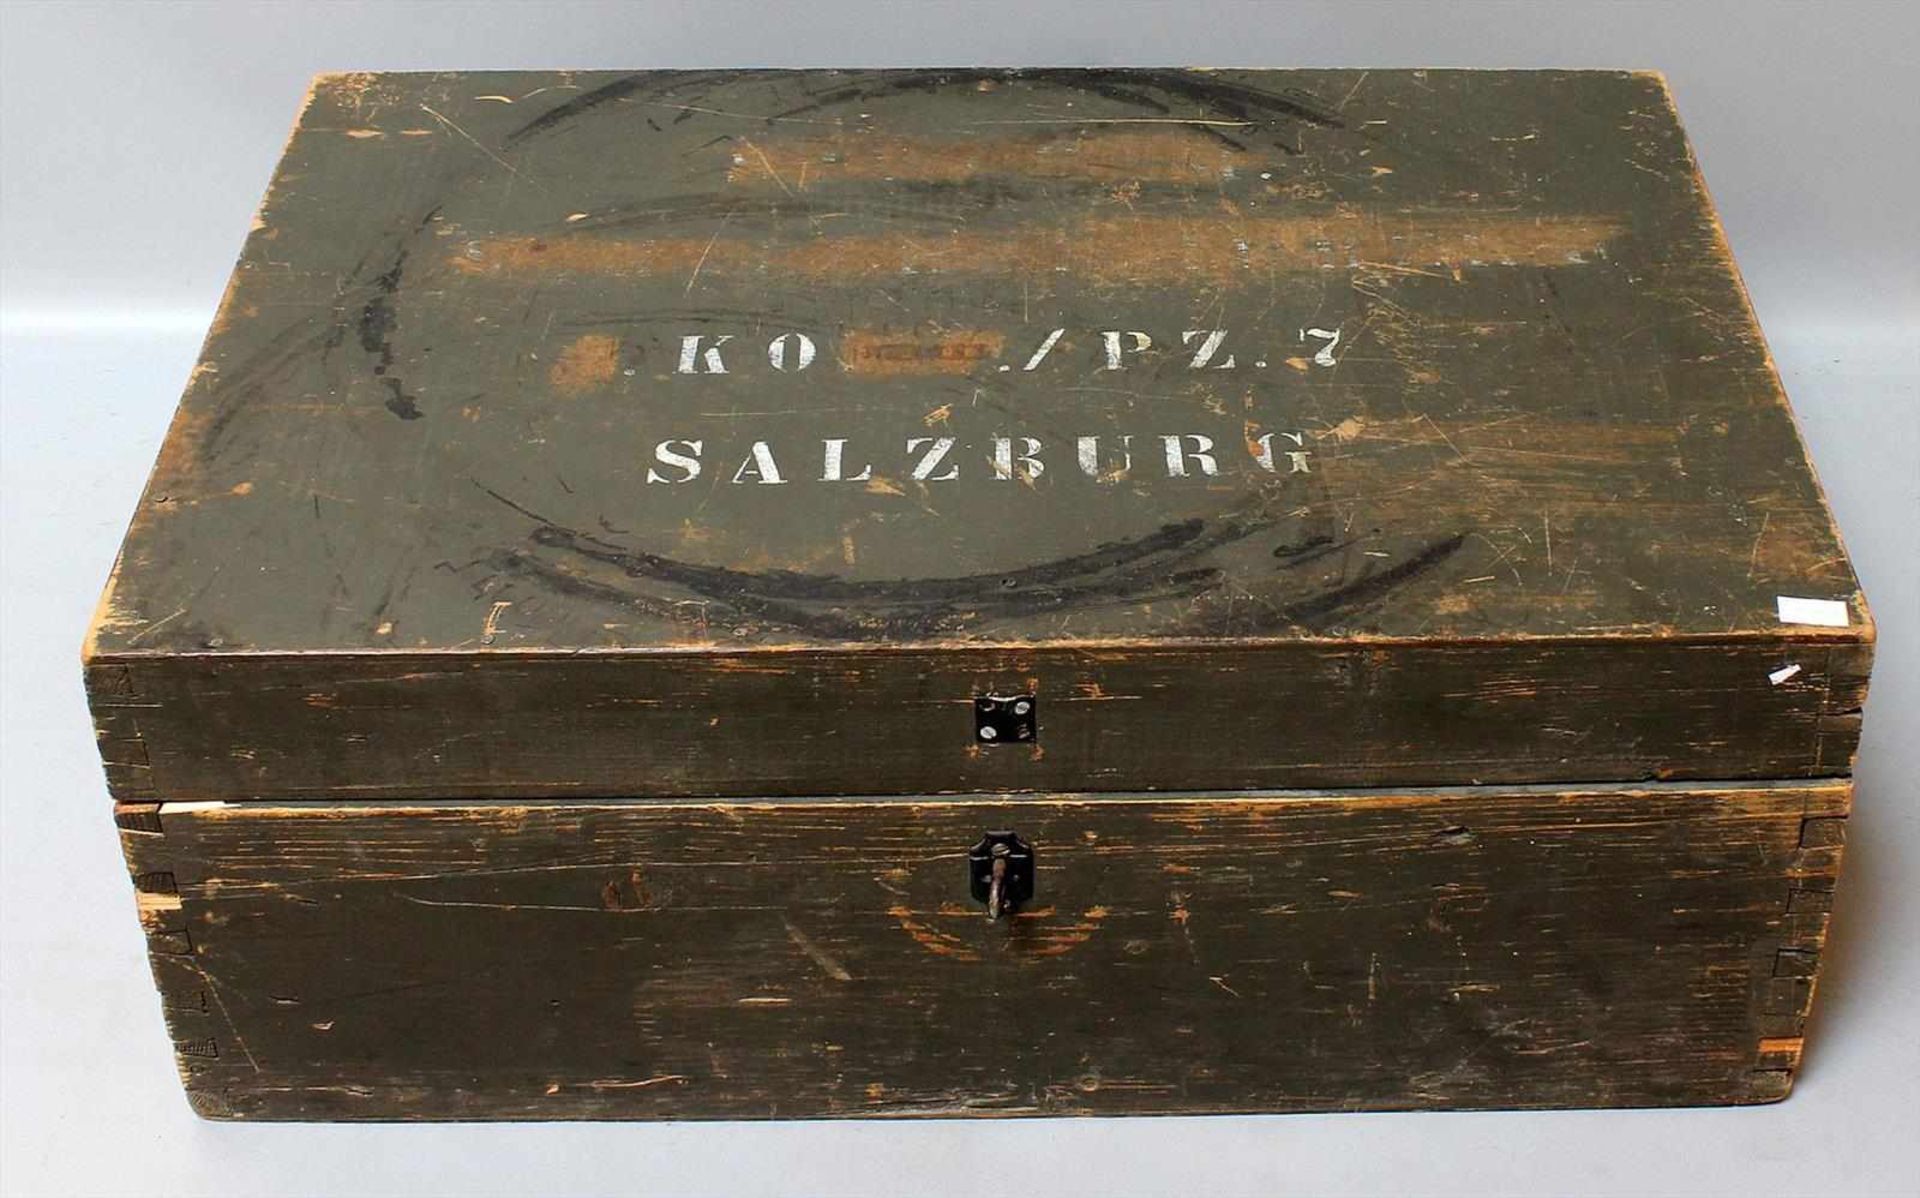 Kiste mit Soldaten-Zubehör, 2. WK.Dabei Stahlhelm, Paar Stiefel, Feldflasche, Gasmasken, Bücher, - Bild 2 aus 2